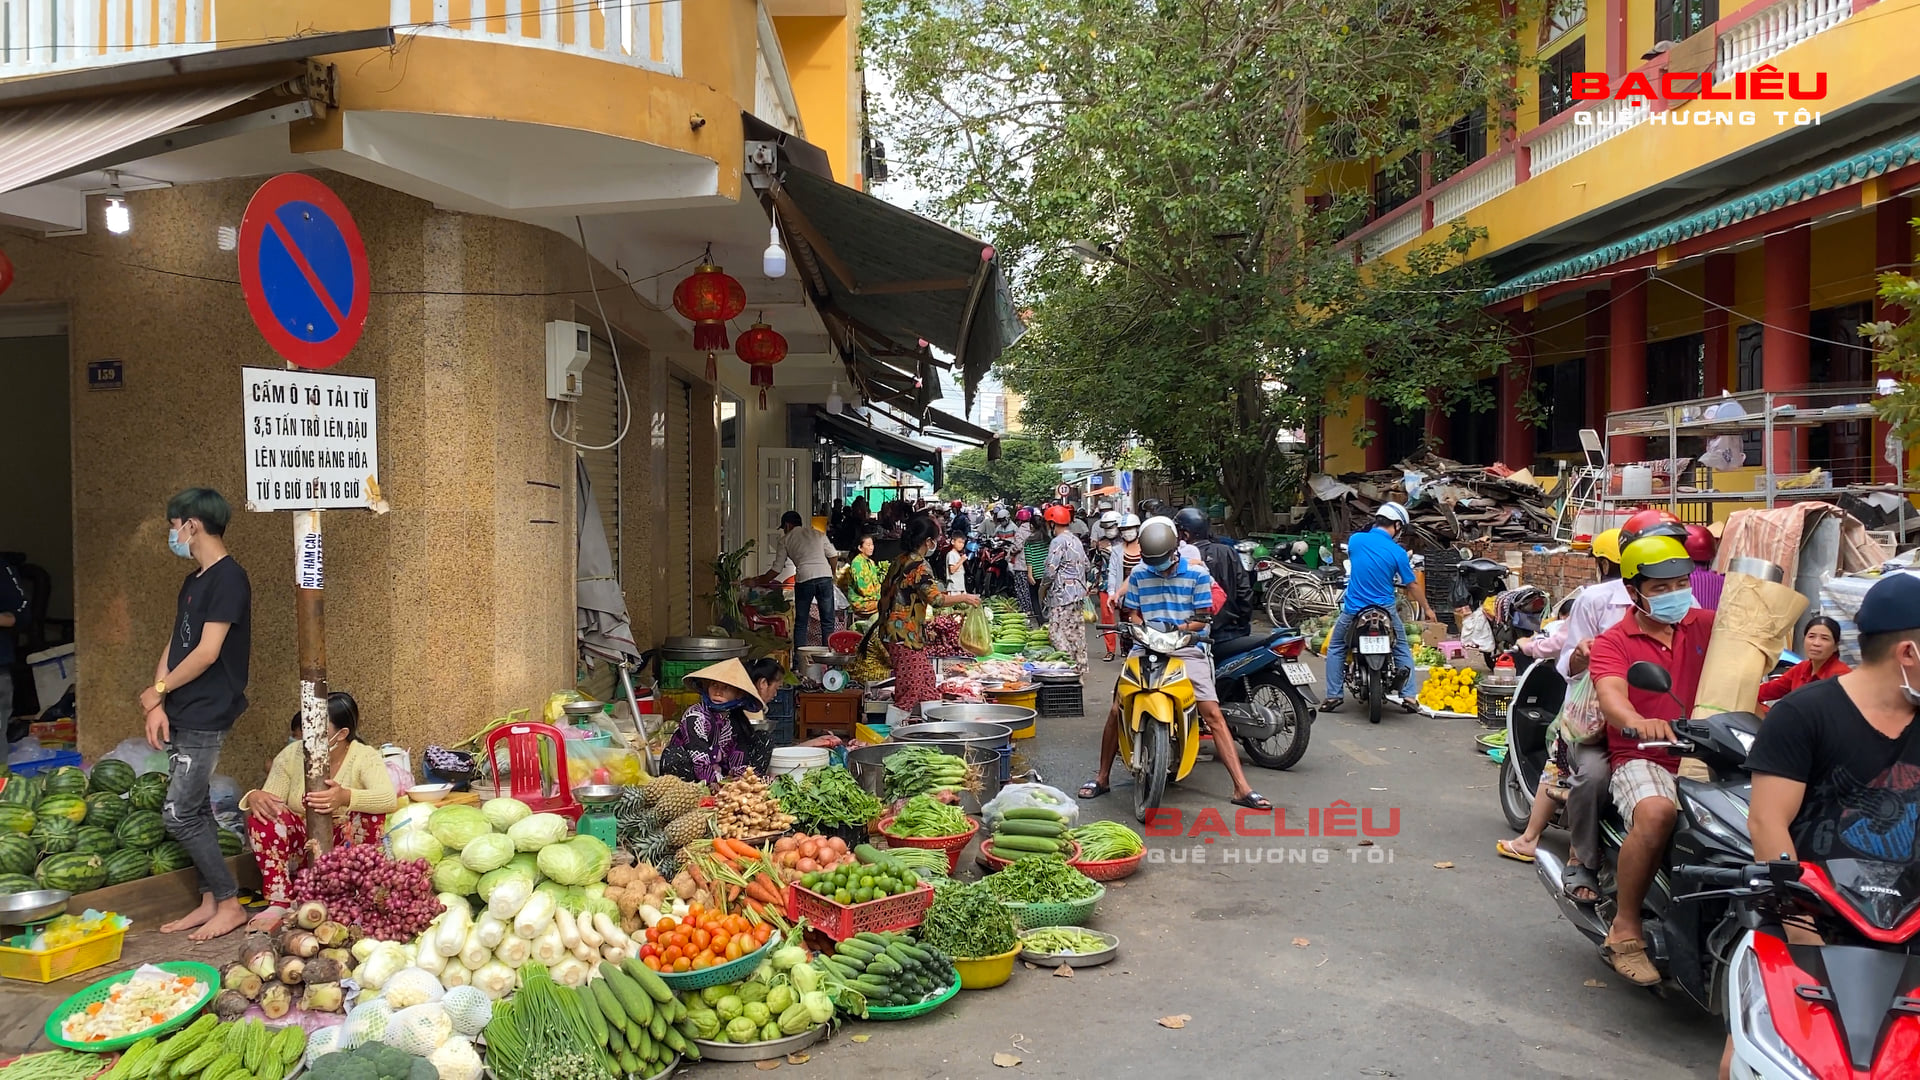 Bac Lieu Market – Where to Shop & Eat in Bac Lieu